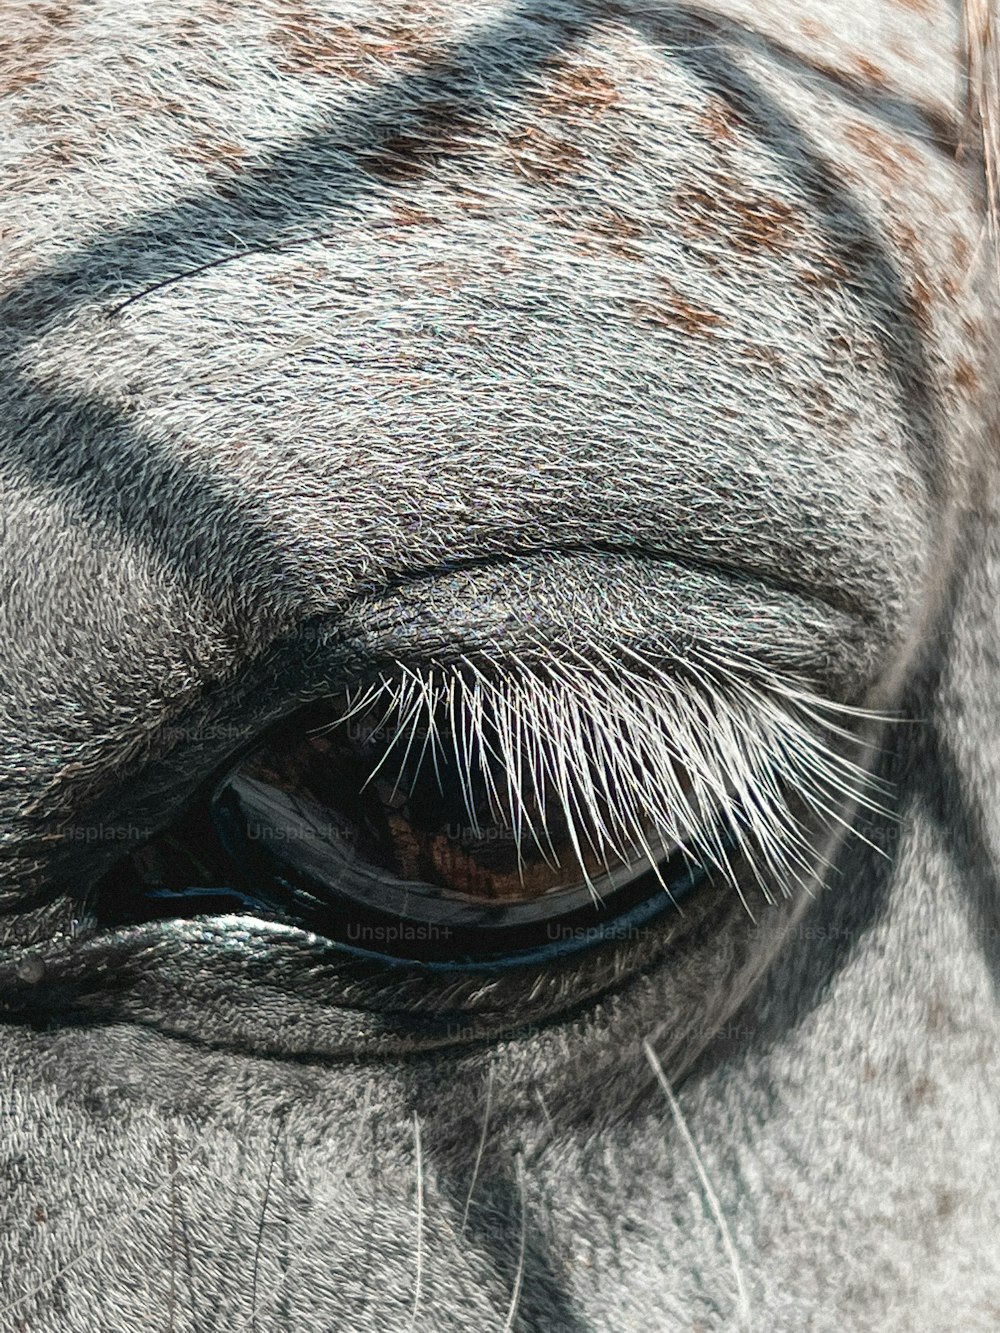 Un gros plan de l’œil d’un cheval